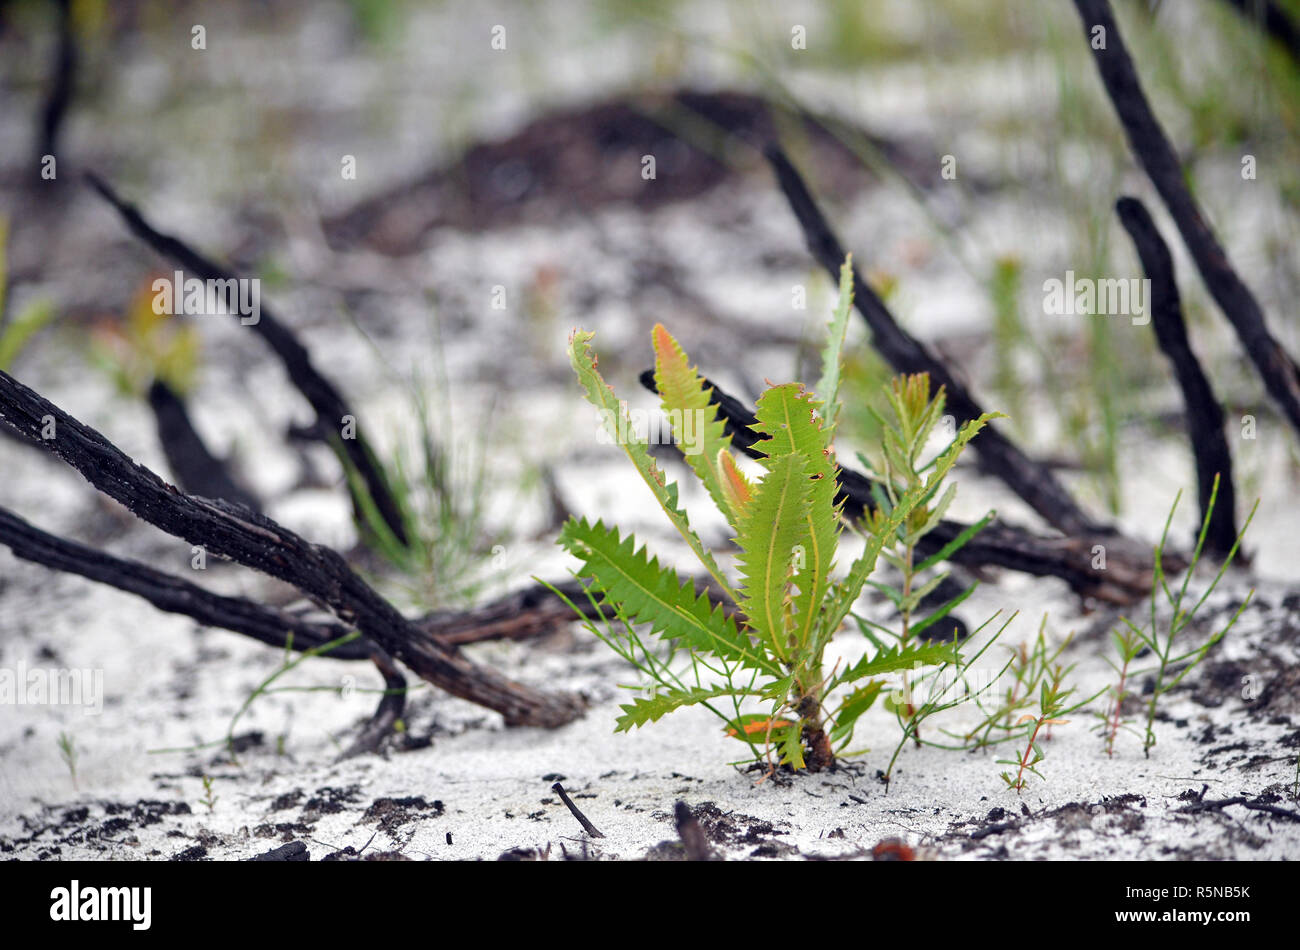 Piccolo Banksia serrata Vivaio Coltivazione in suolo sabbioso in heath nella parte anteriore del bruciato e annerito le filiali a seguito di una bushfire. Il Royal National Park, NSW Foto Stock